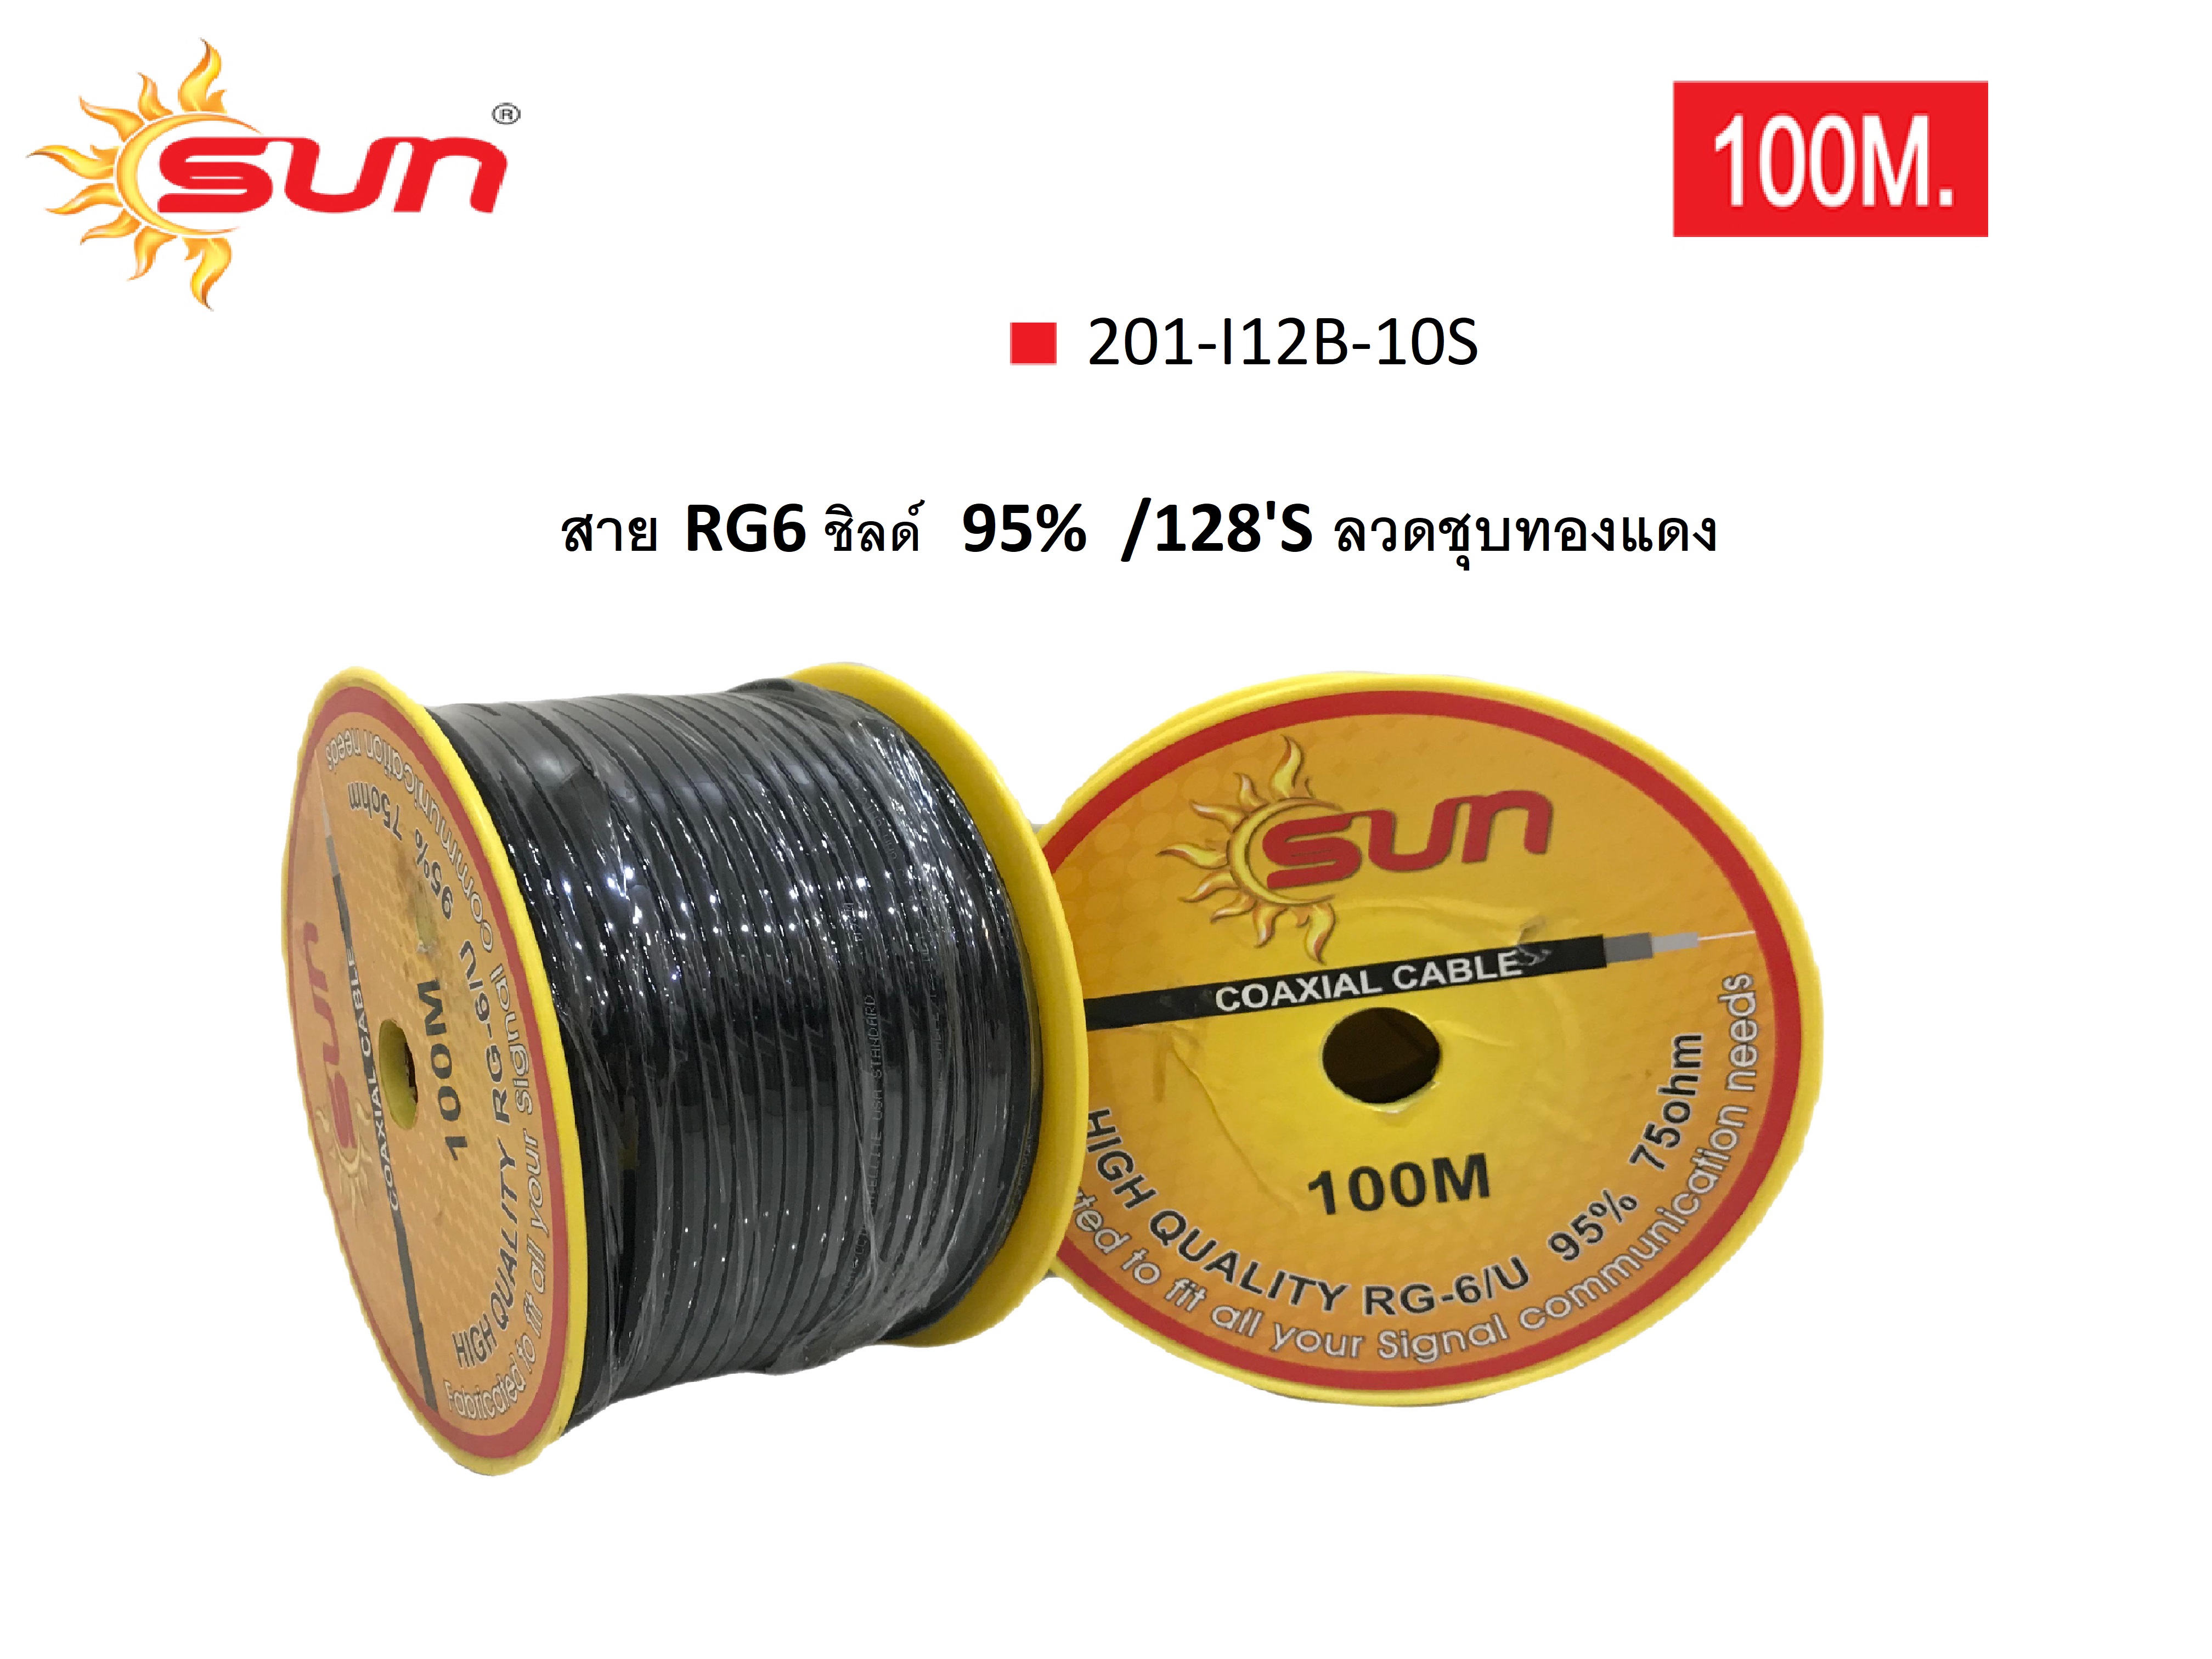 สาย Rg6 / ชิลด์ 95% สีดำ ลวดชุบทองแดง ยาว 100 เมตร Sun - Thaieletricmart